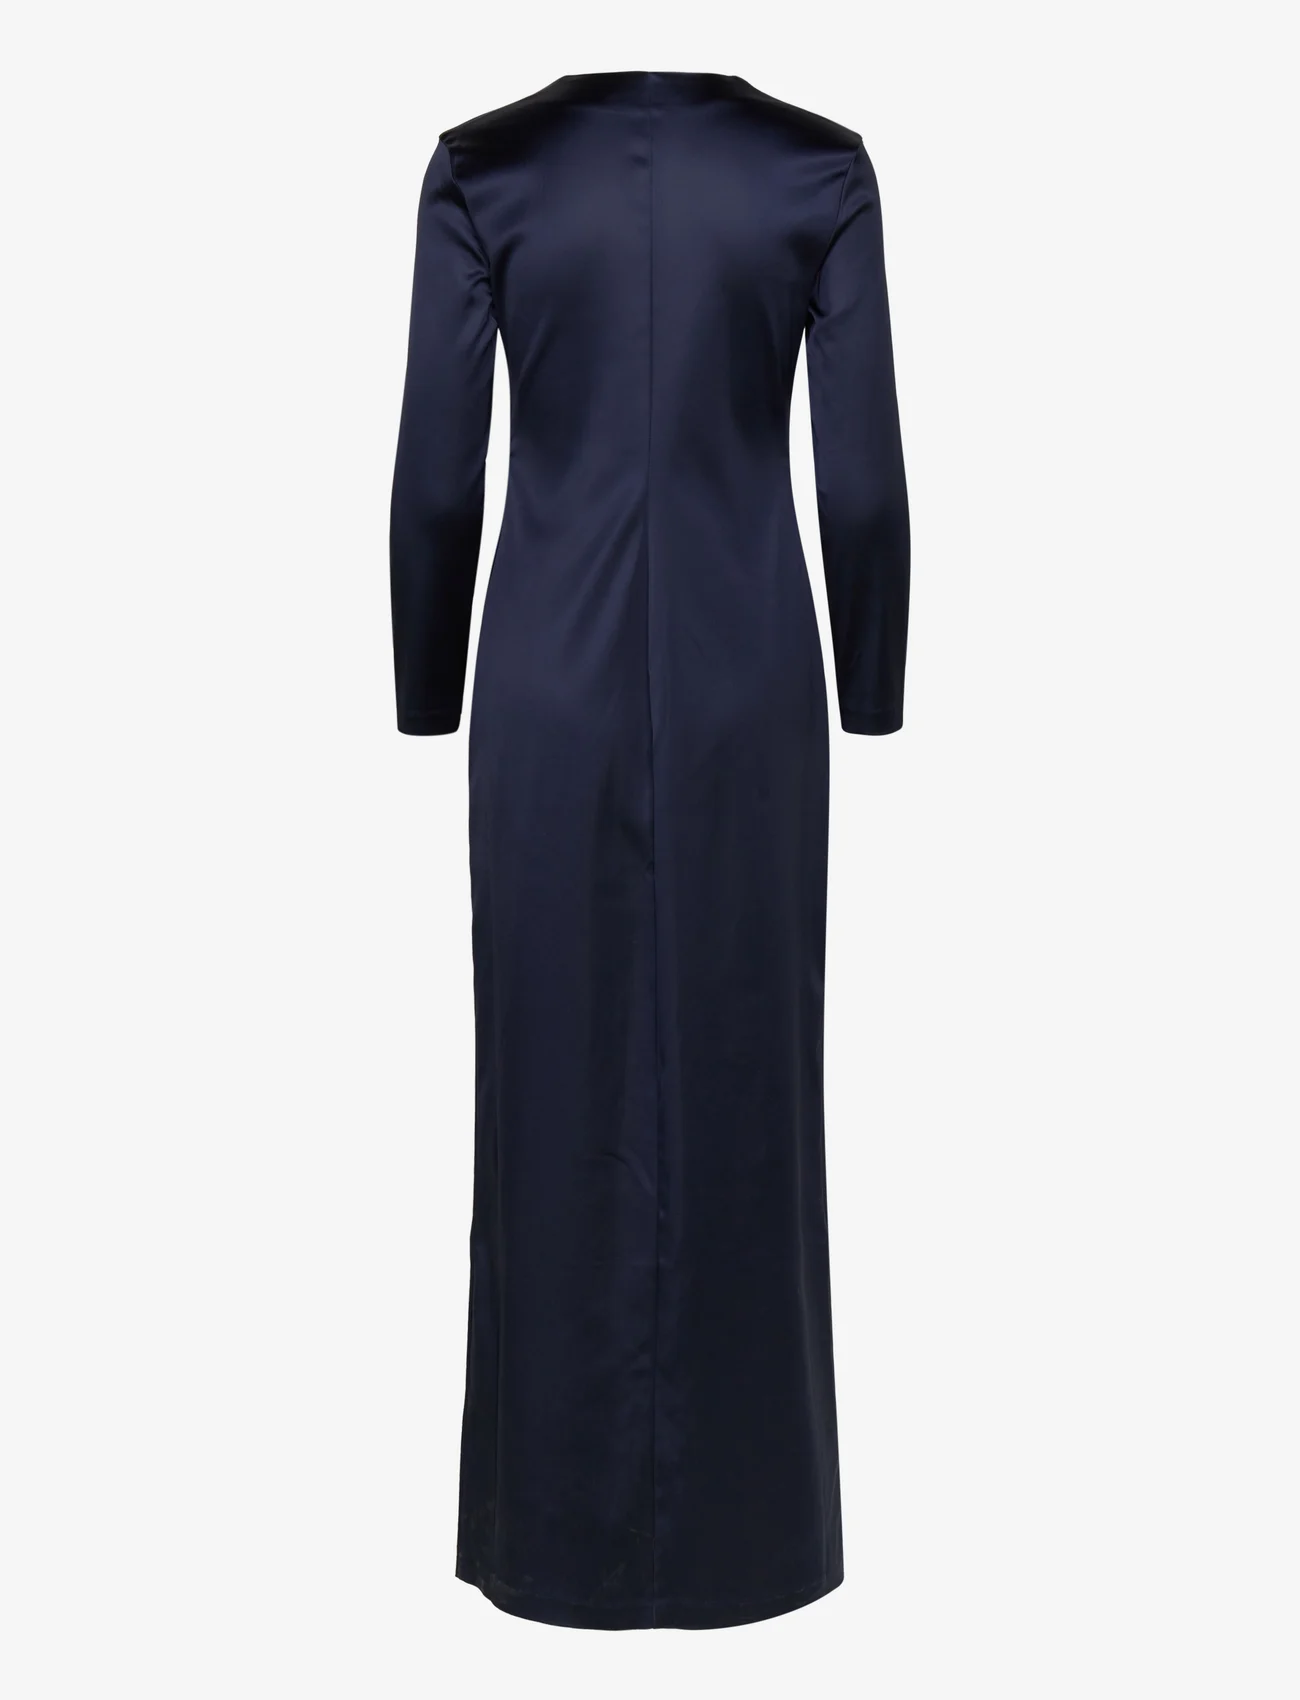 Wood Wood - Andromeda heavy satin dress - odzież imprezowa w cenach outletowych - navy - 1